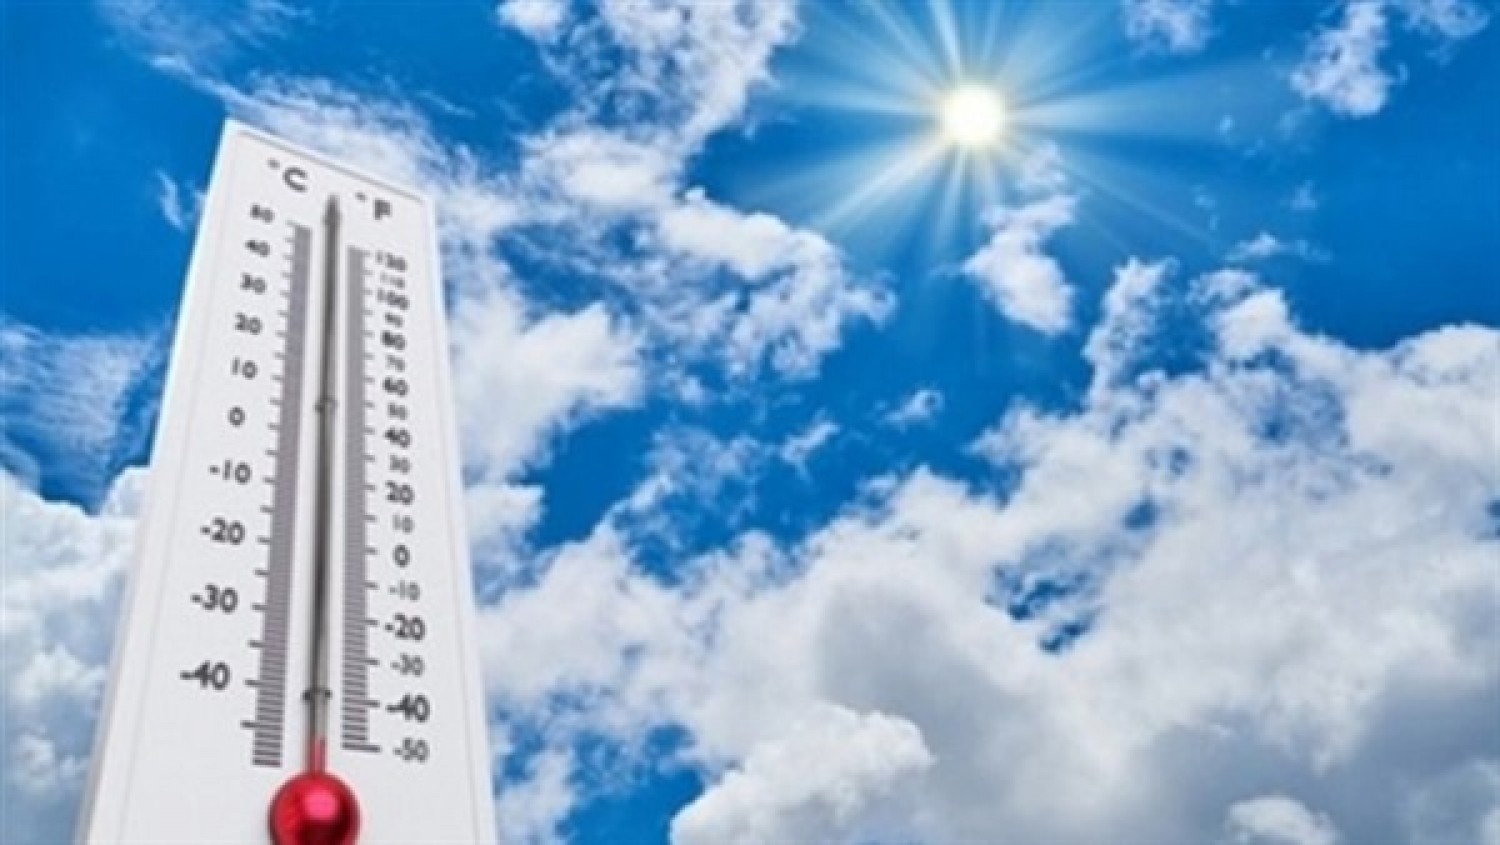 درجات الحرارة اليوم الجمعة 1-5-2020 فى مصر - جريدة المال